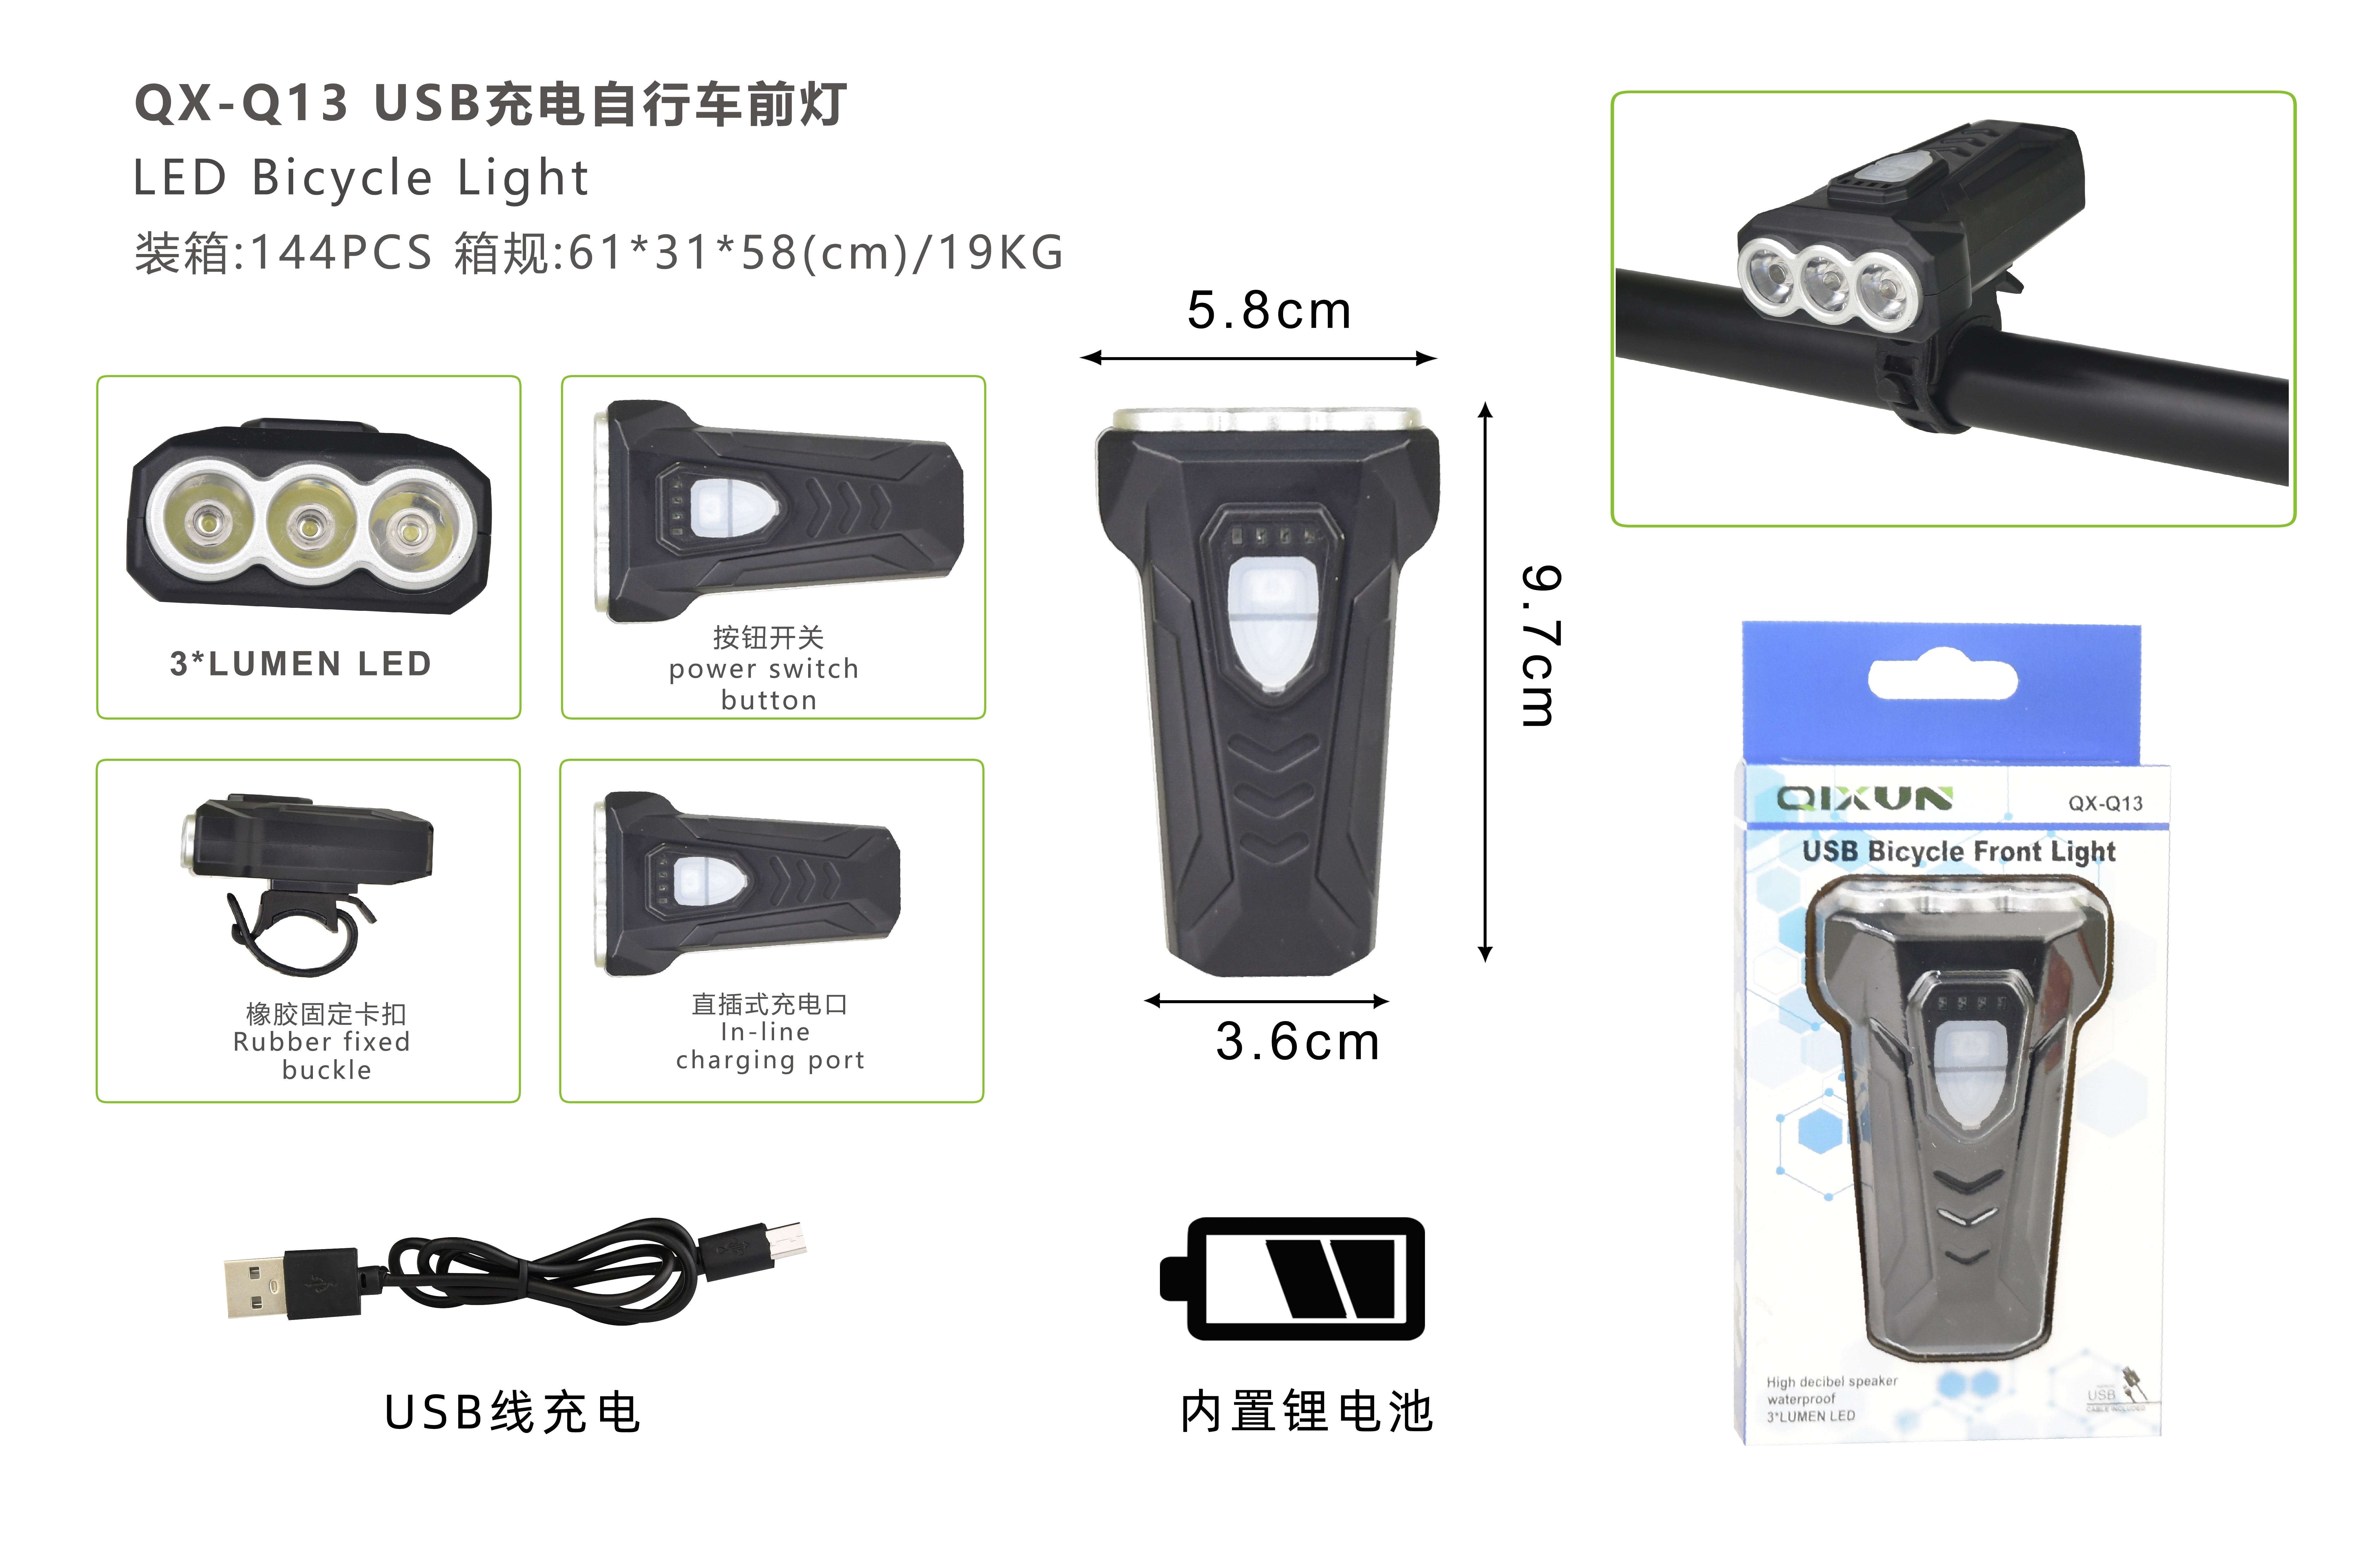 (价格面议)"QX-Q13 3颗LUMNS LED 灯泡 V8 USB电线 充电 前灯"图